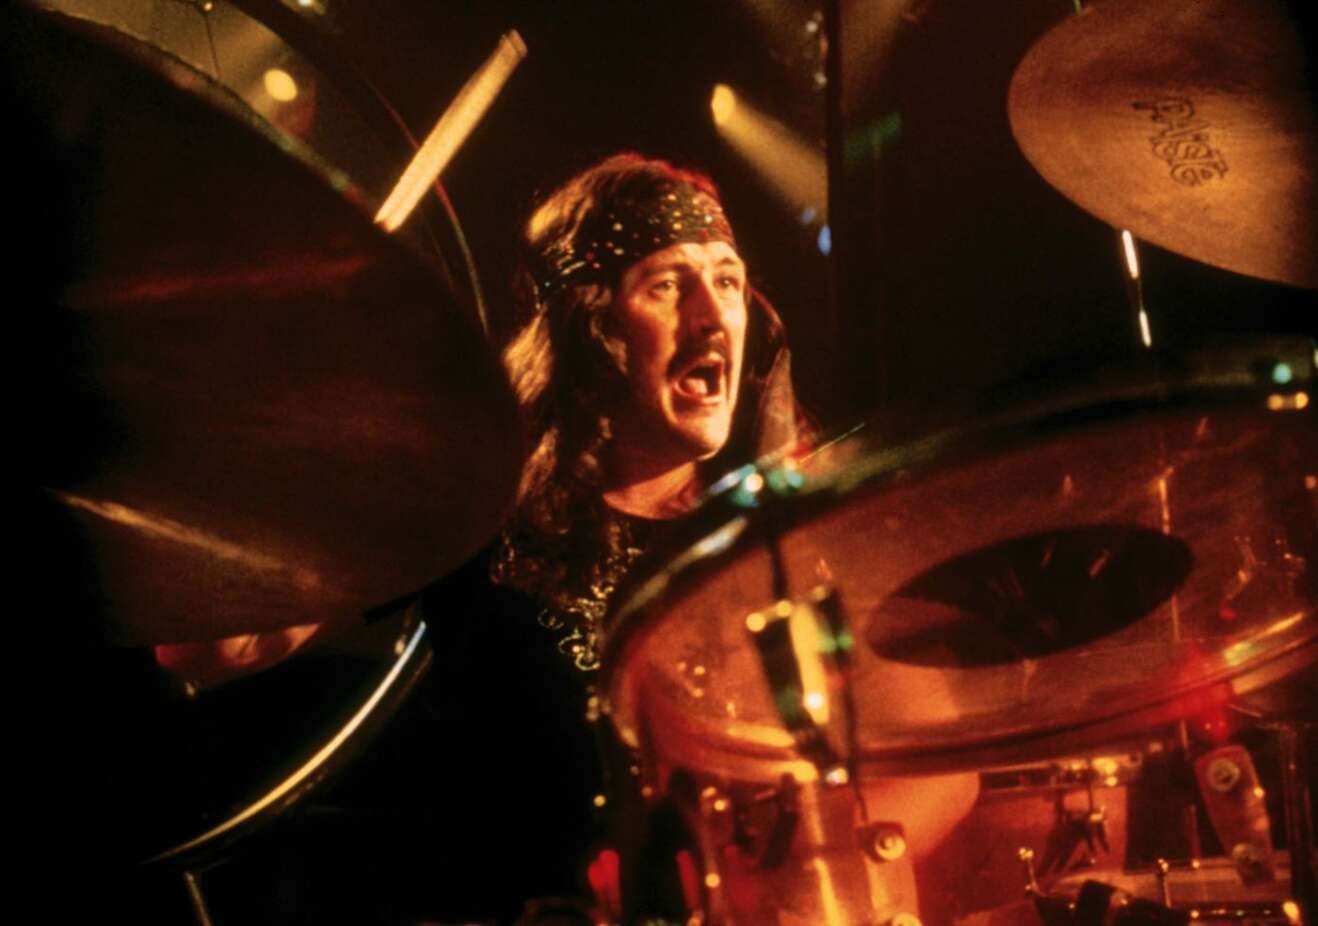 John Bonham sitzt hinter Schlagzeug und spielt live